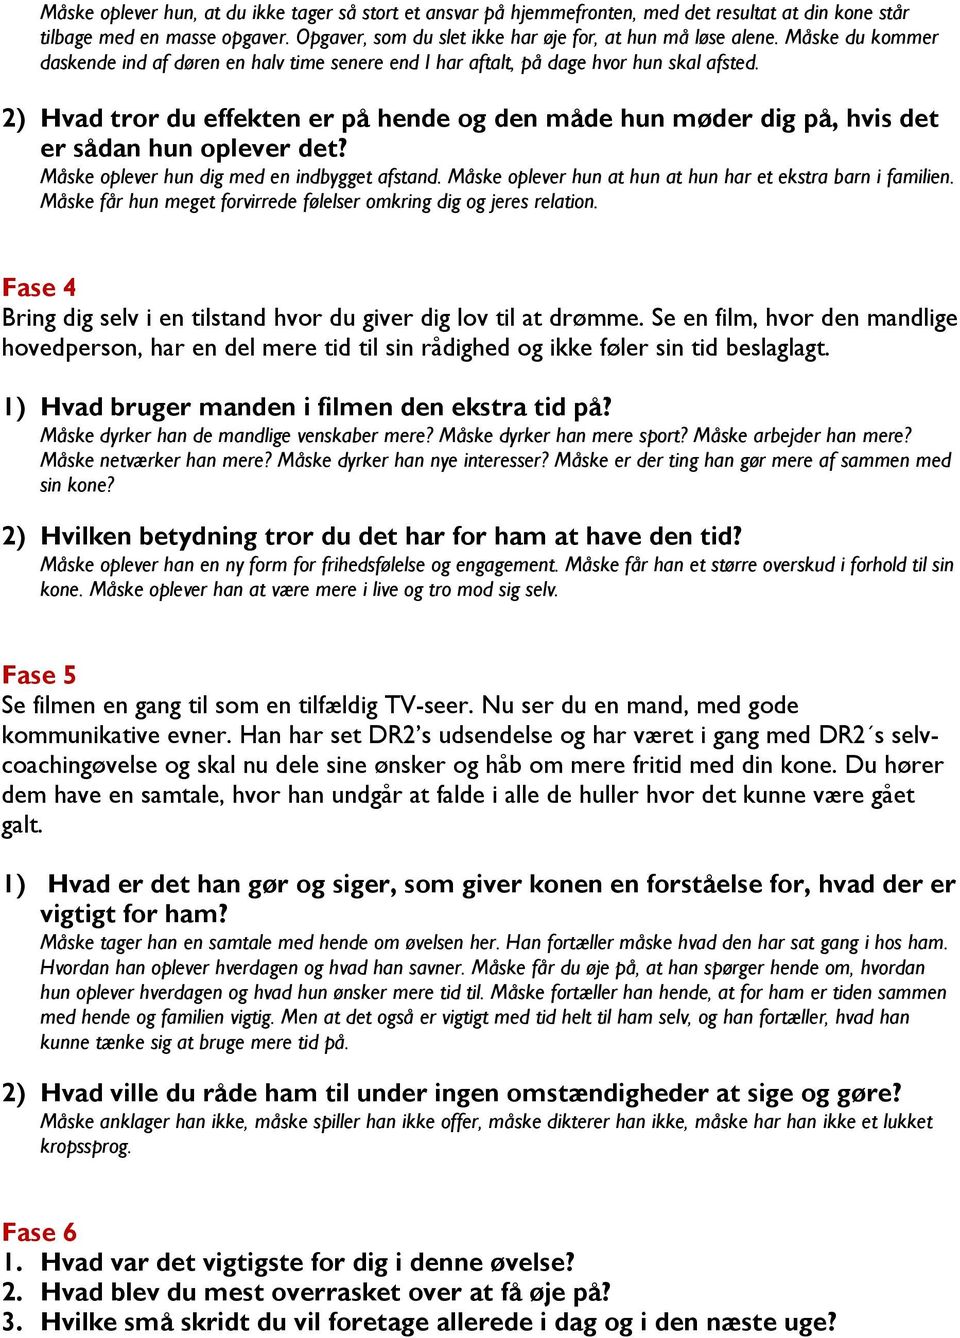 6 selvcoachingøvelser til mænd i parforhold! - PDF Free Download